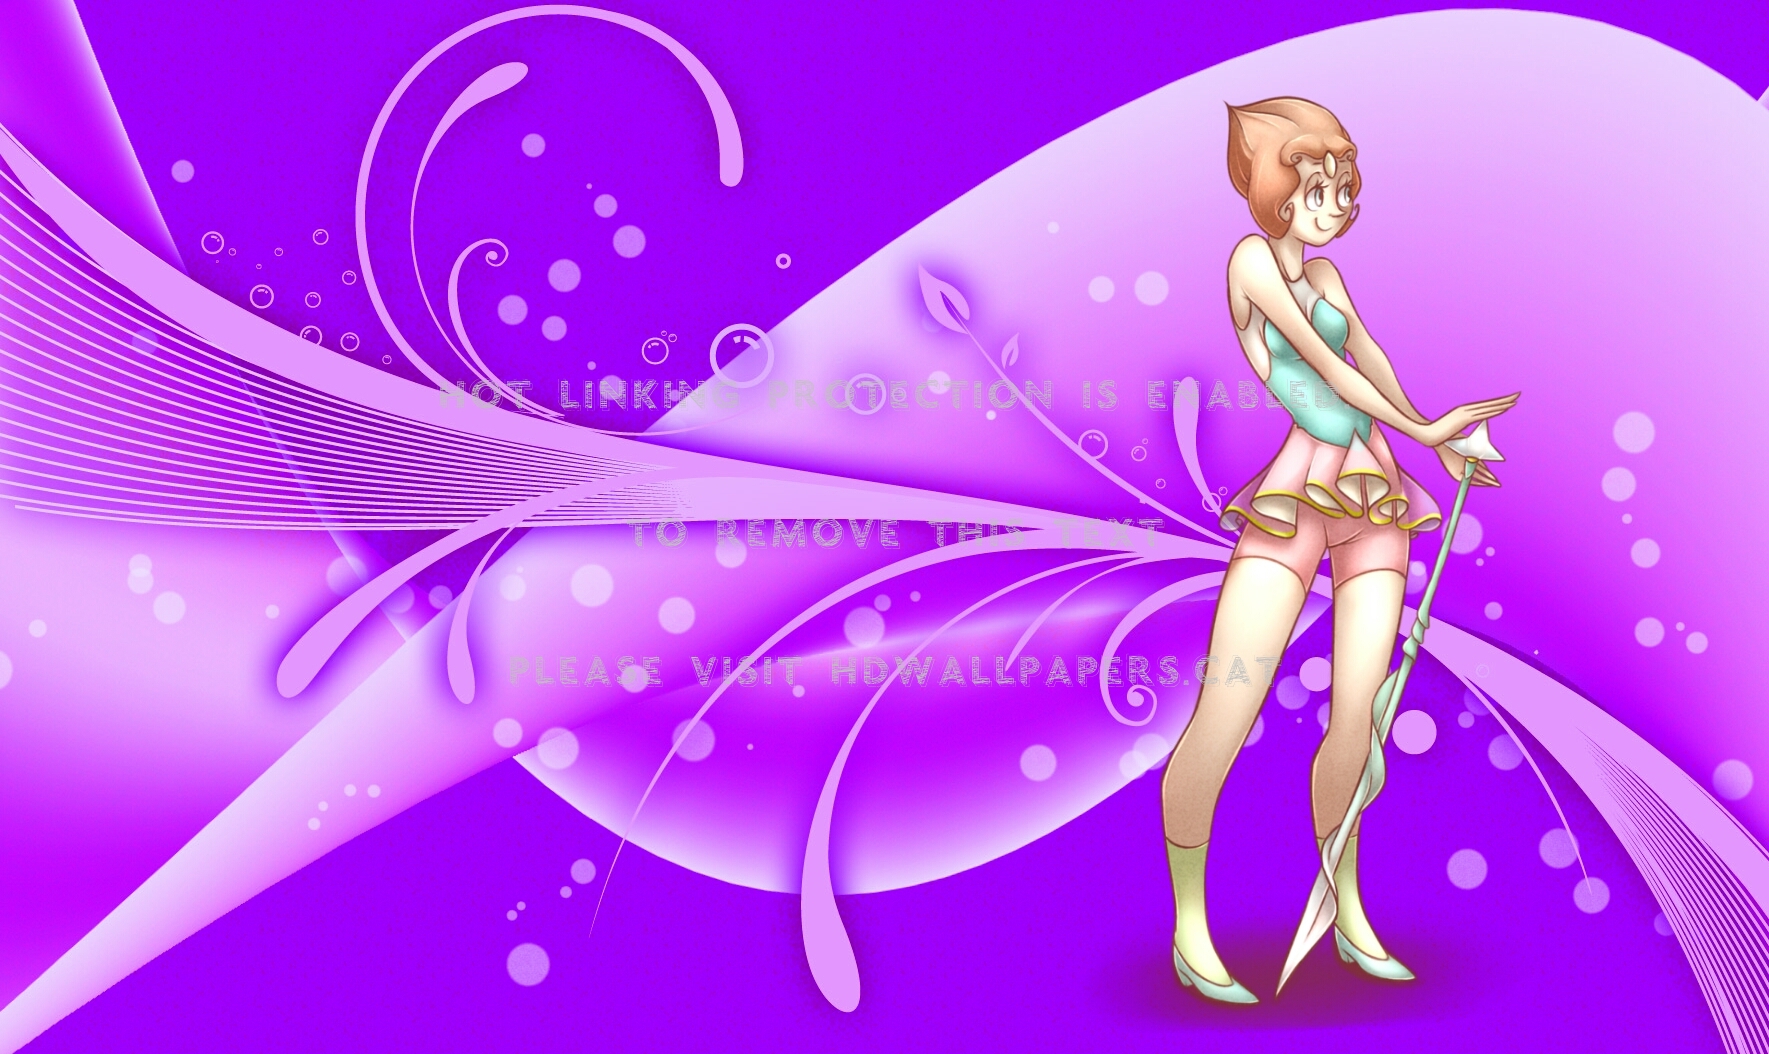 steven universe wallpaper,violet,purple,lilac,fictional character,graphic design